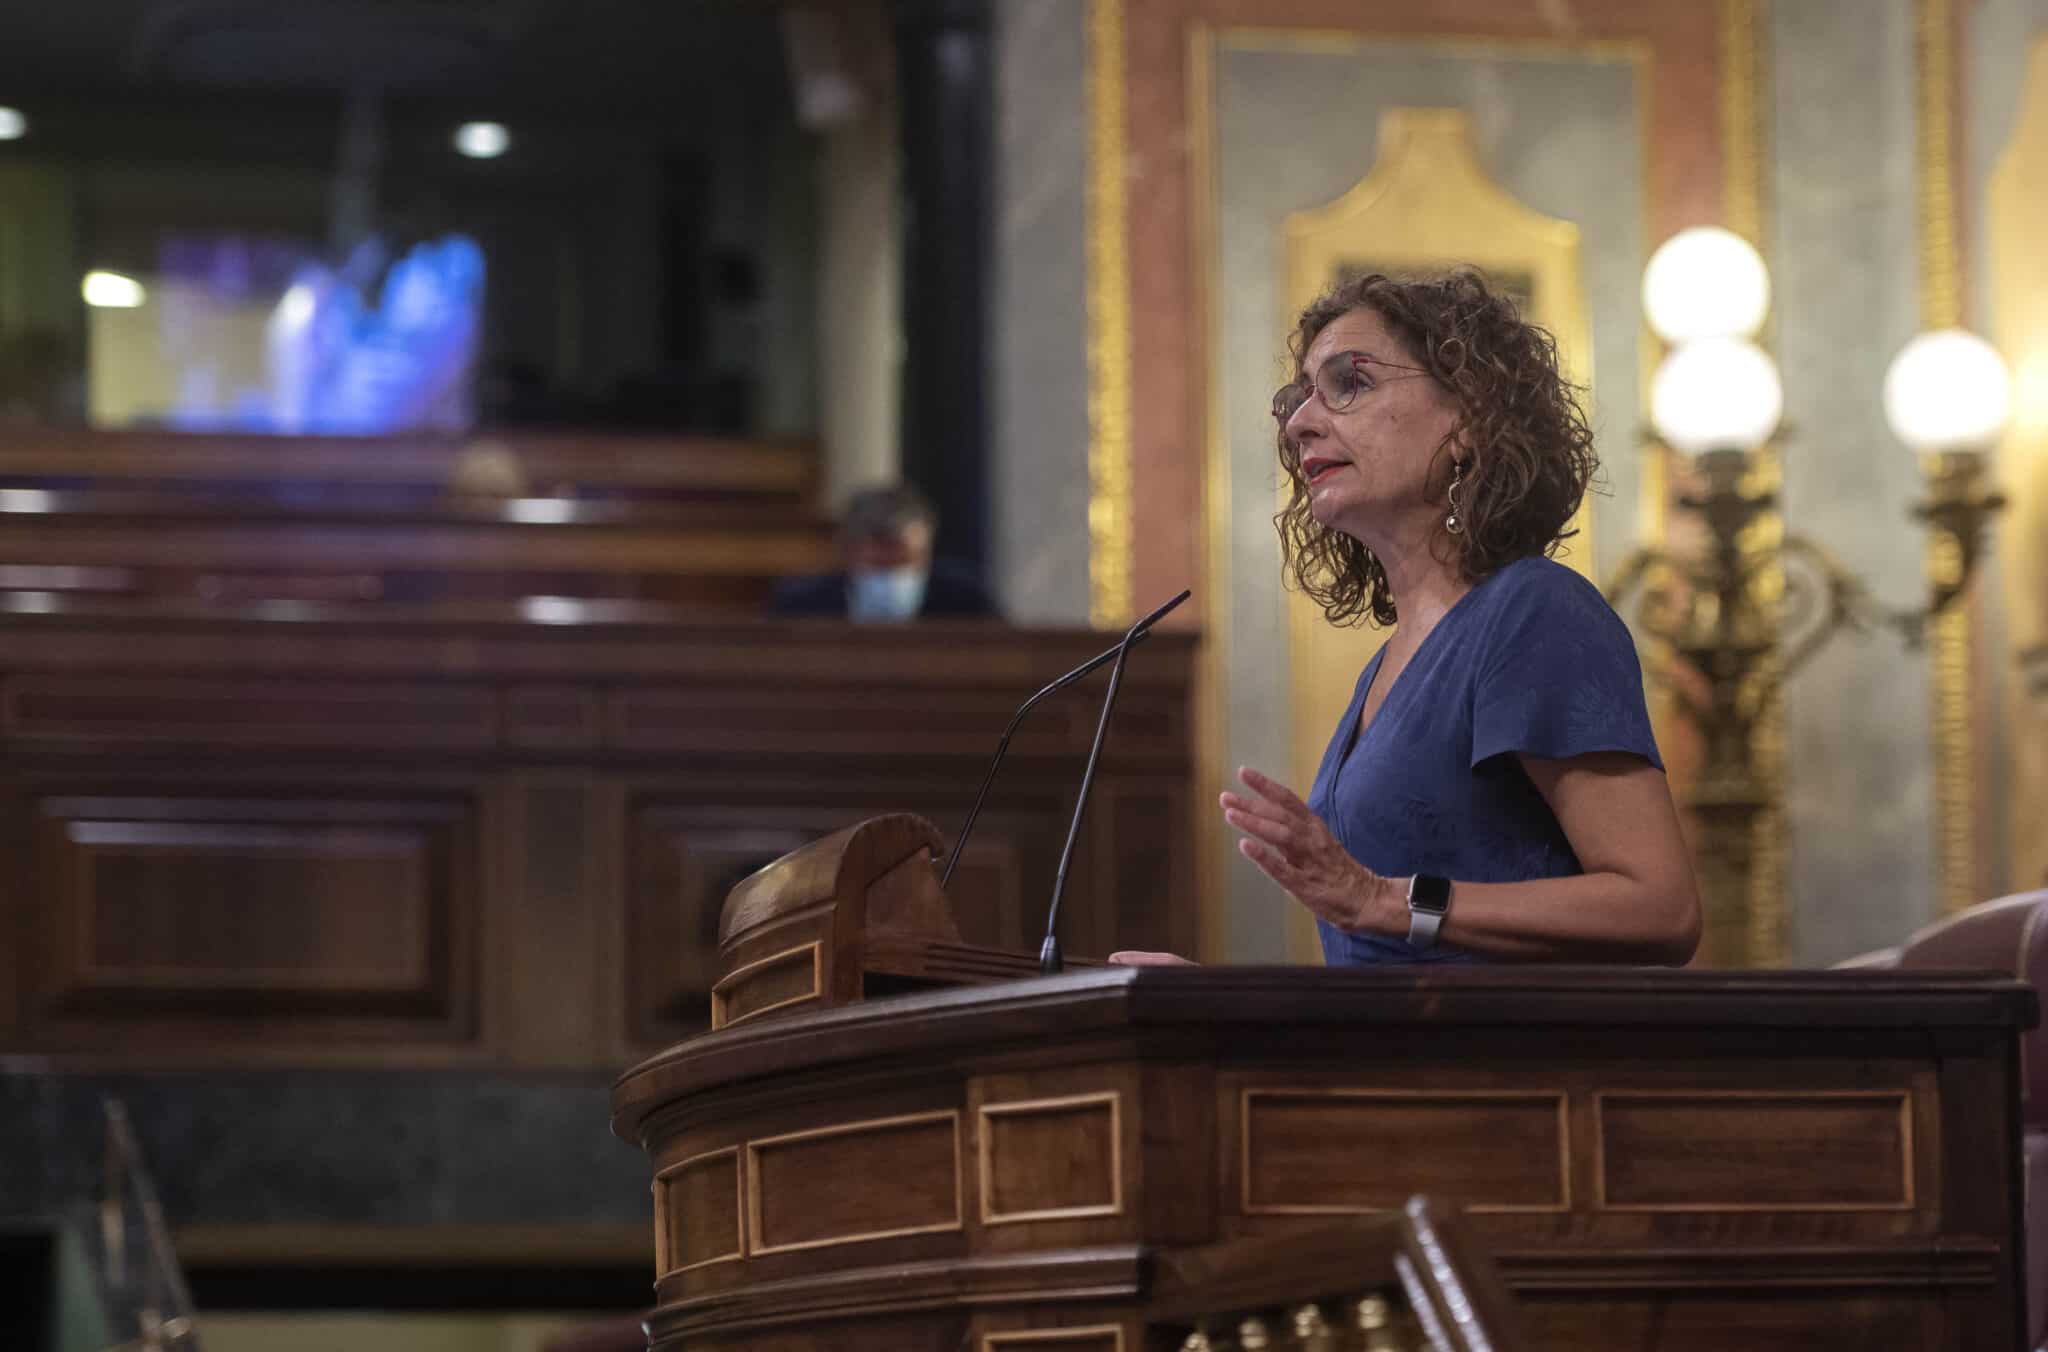 La ministra de Hacienda y Función Pública, María Jesús Montero, durante una sesión plenaria en el Congreso de los Diputados, a 13 de septiembre de 2021, en Madrid (España).